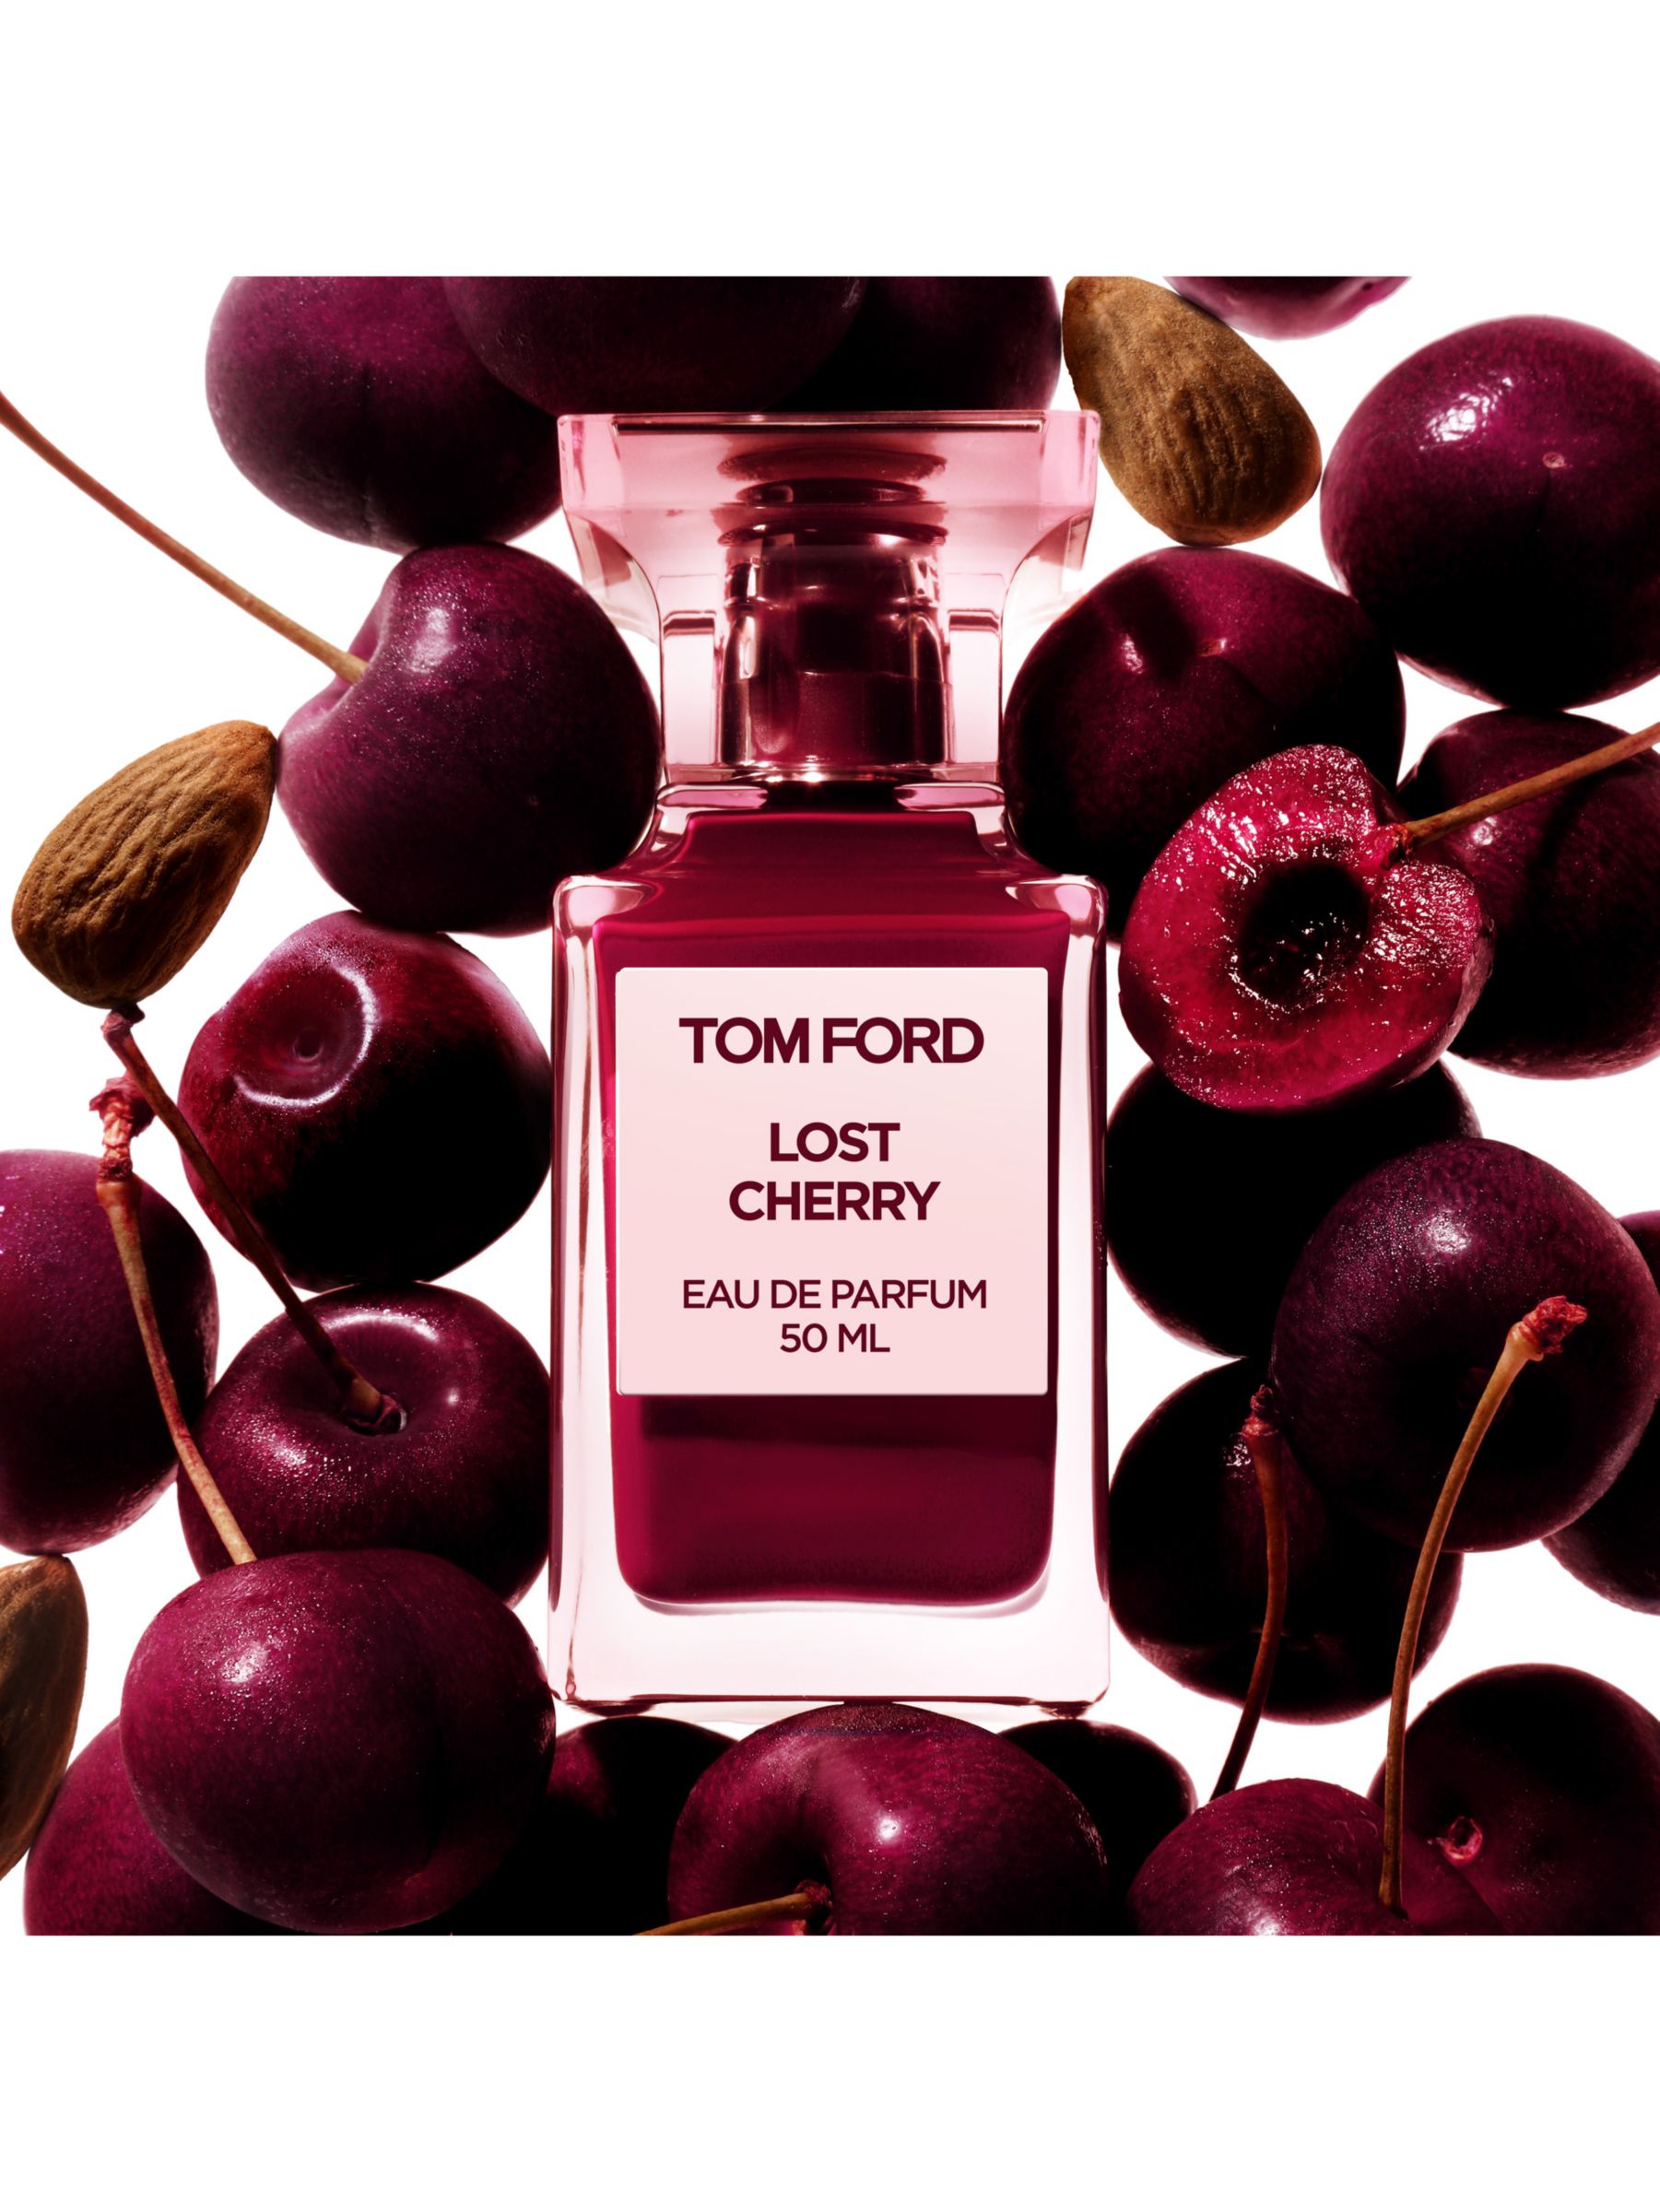 TOM FORD Private Blend Lost Cherry Eau de Parfum, 50ml 2